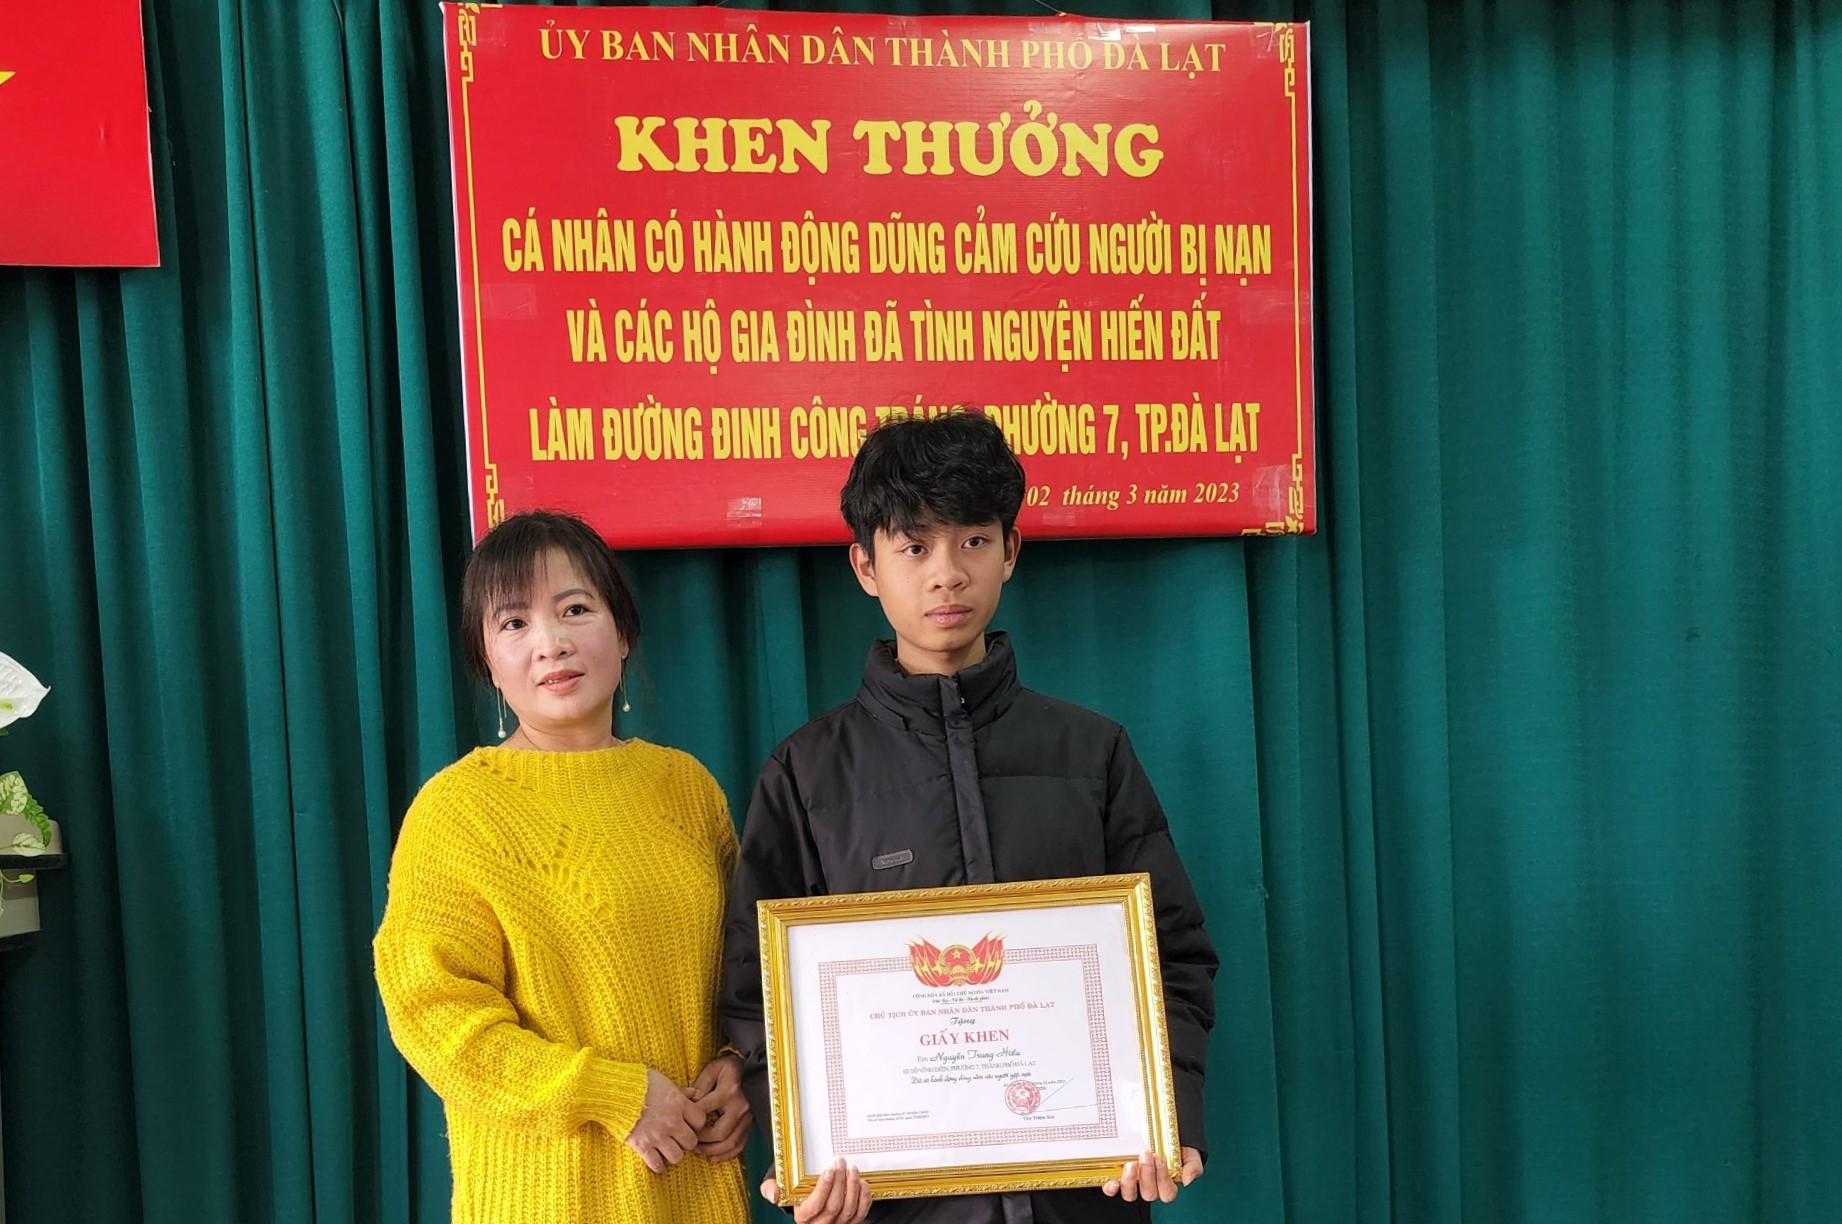 Chàng trai 17 tuổi nhảy xuống hồ Xuân Hương cứu người gặp tai nạn lúc 12 giờ đêm - Ảnh 3.